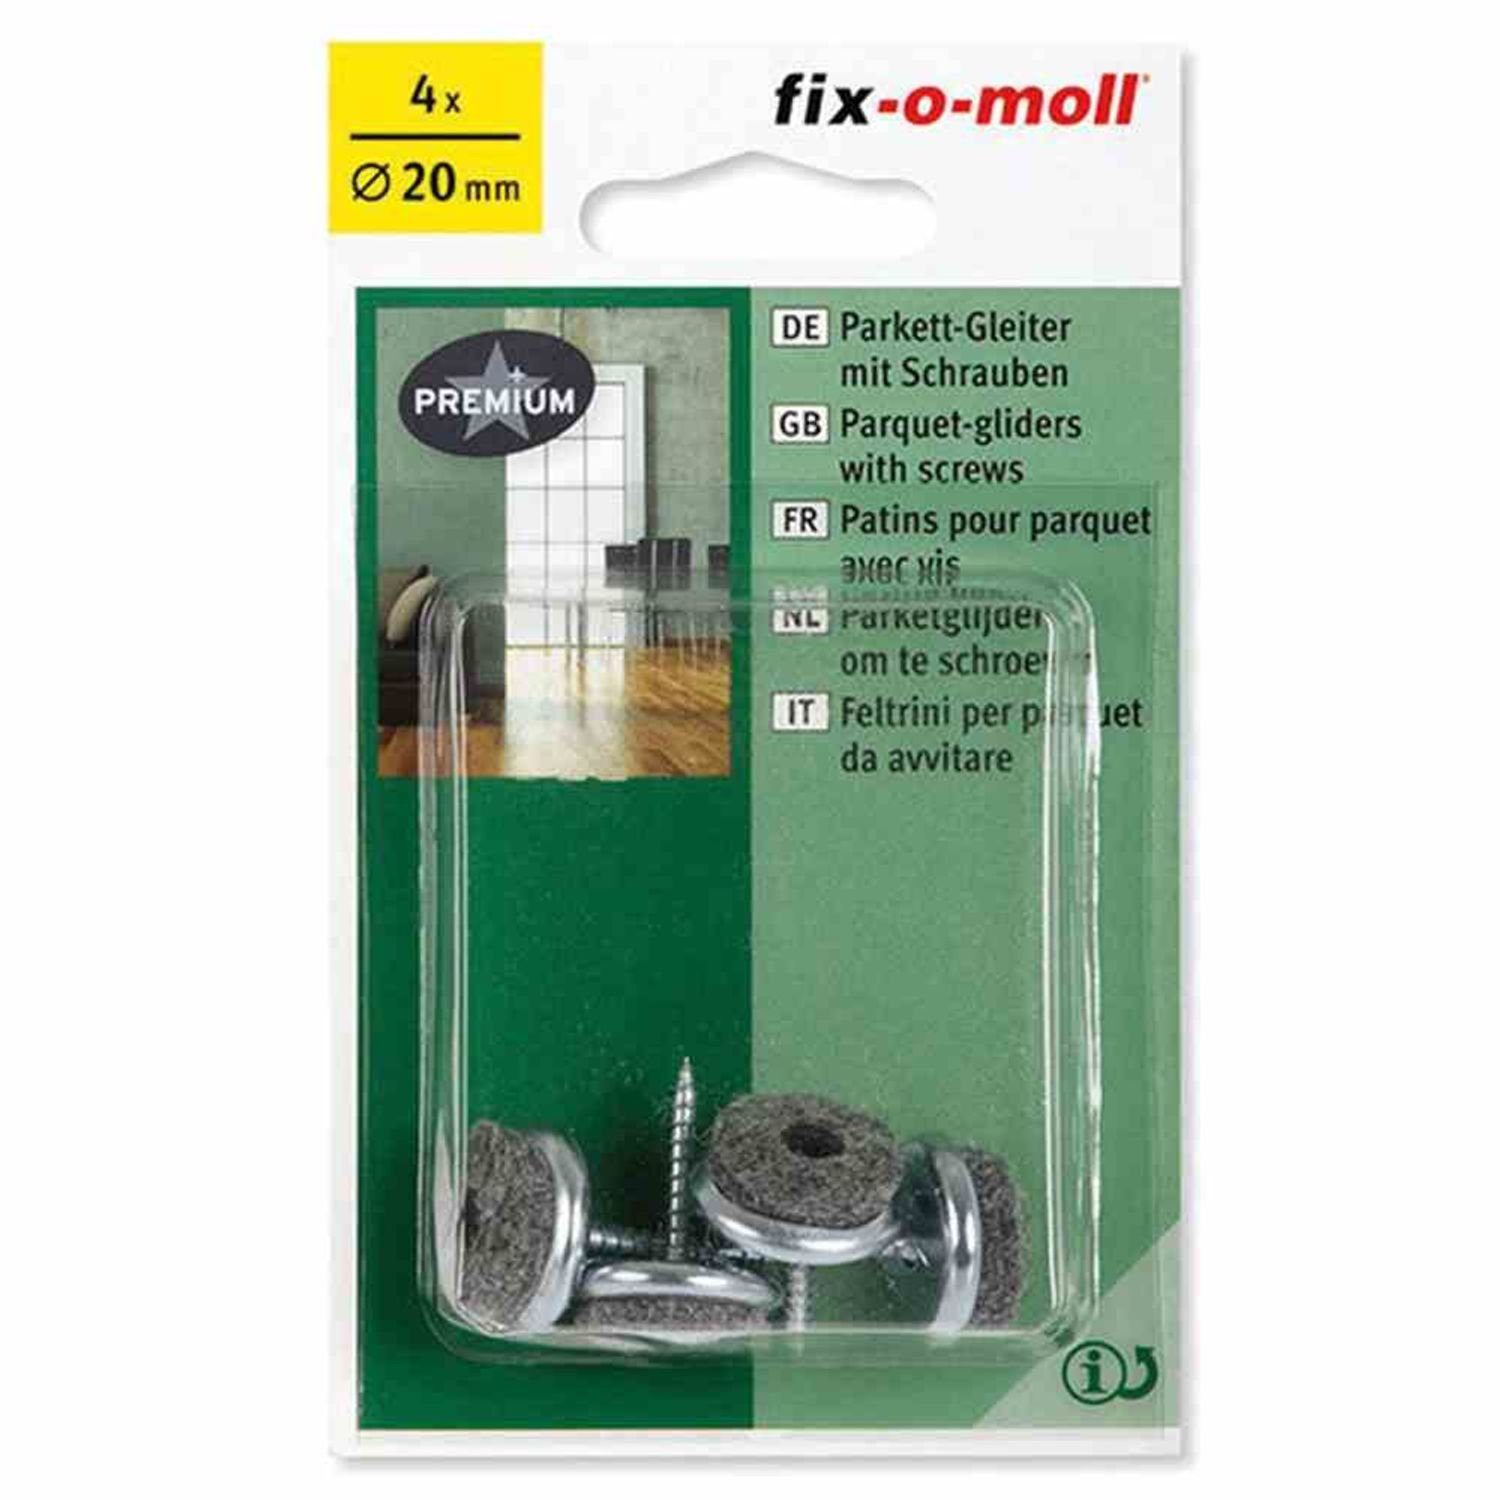 Fix-O-Moll Filzgleiter Parkettgleiter mit Schraube 20 mm Stück 4